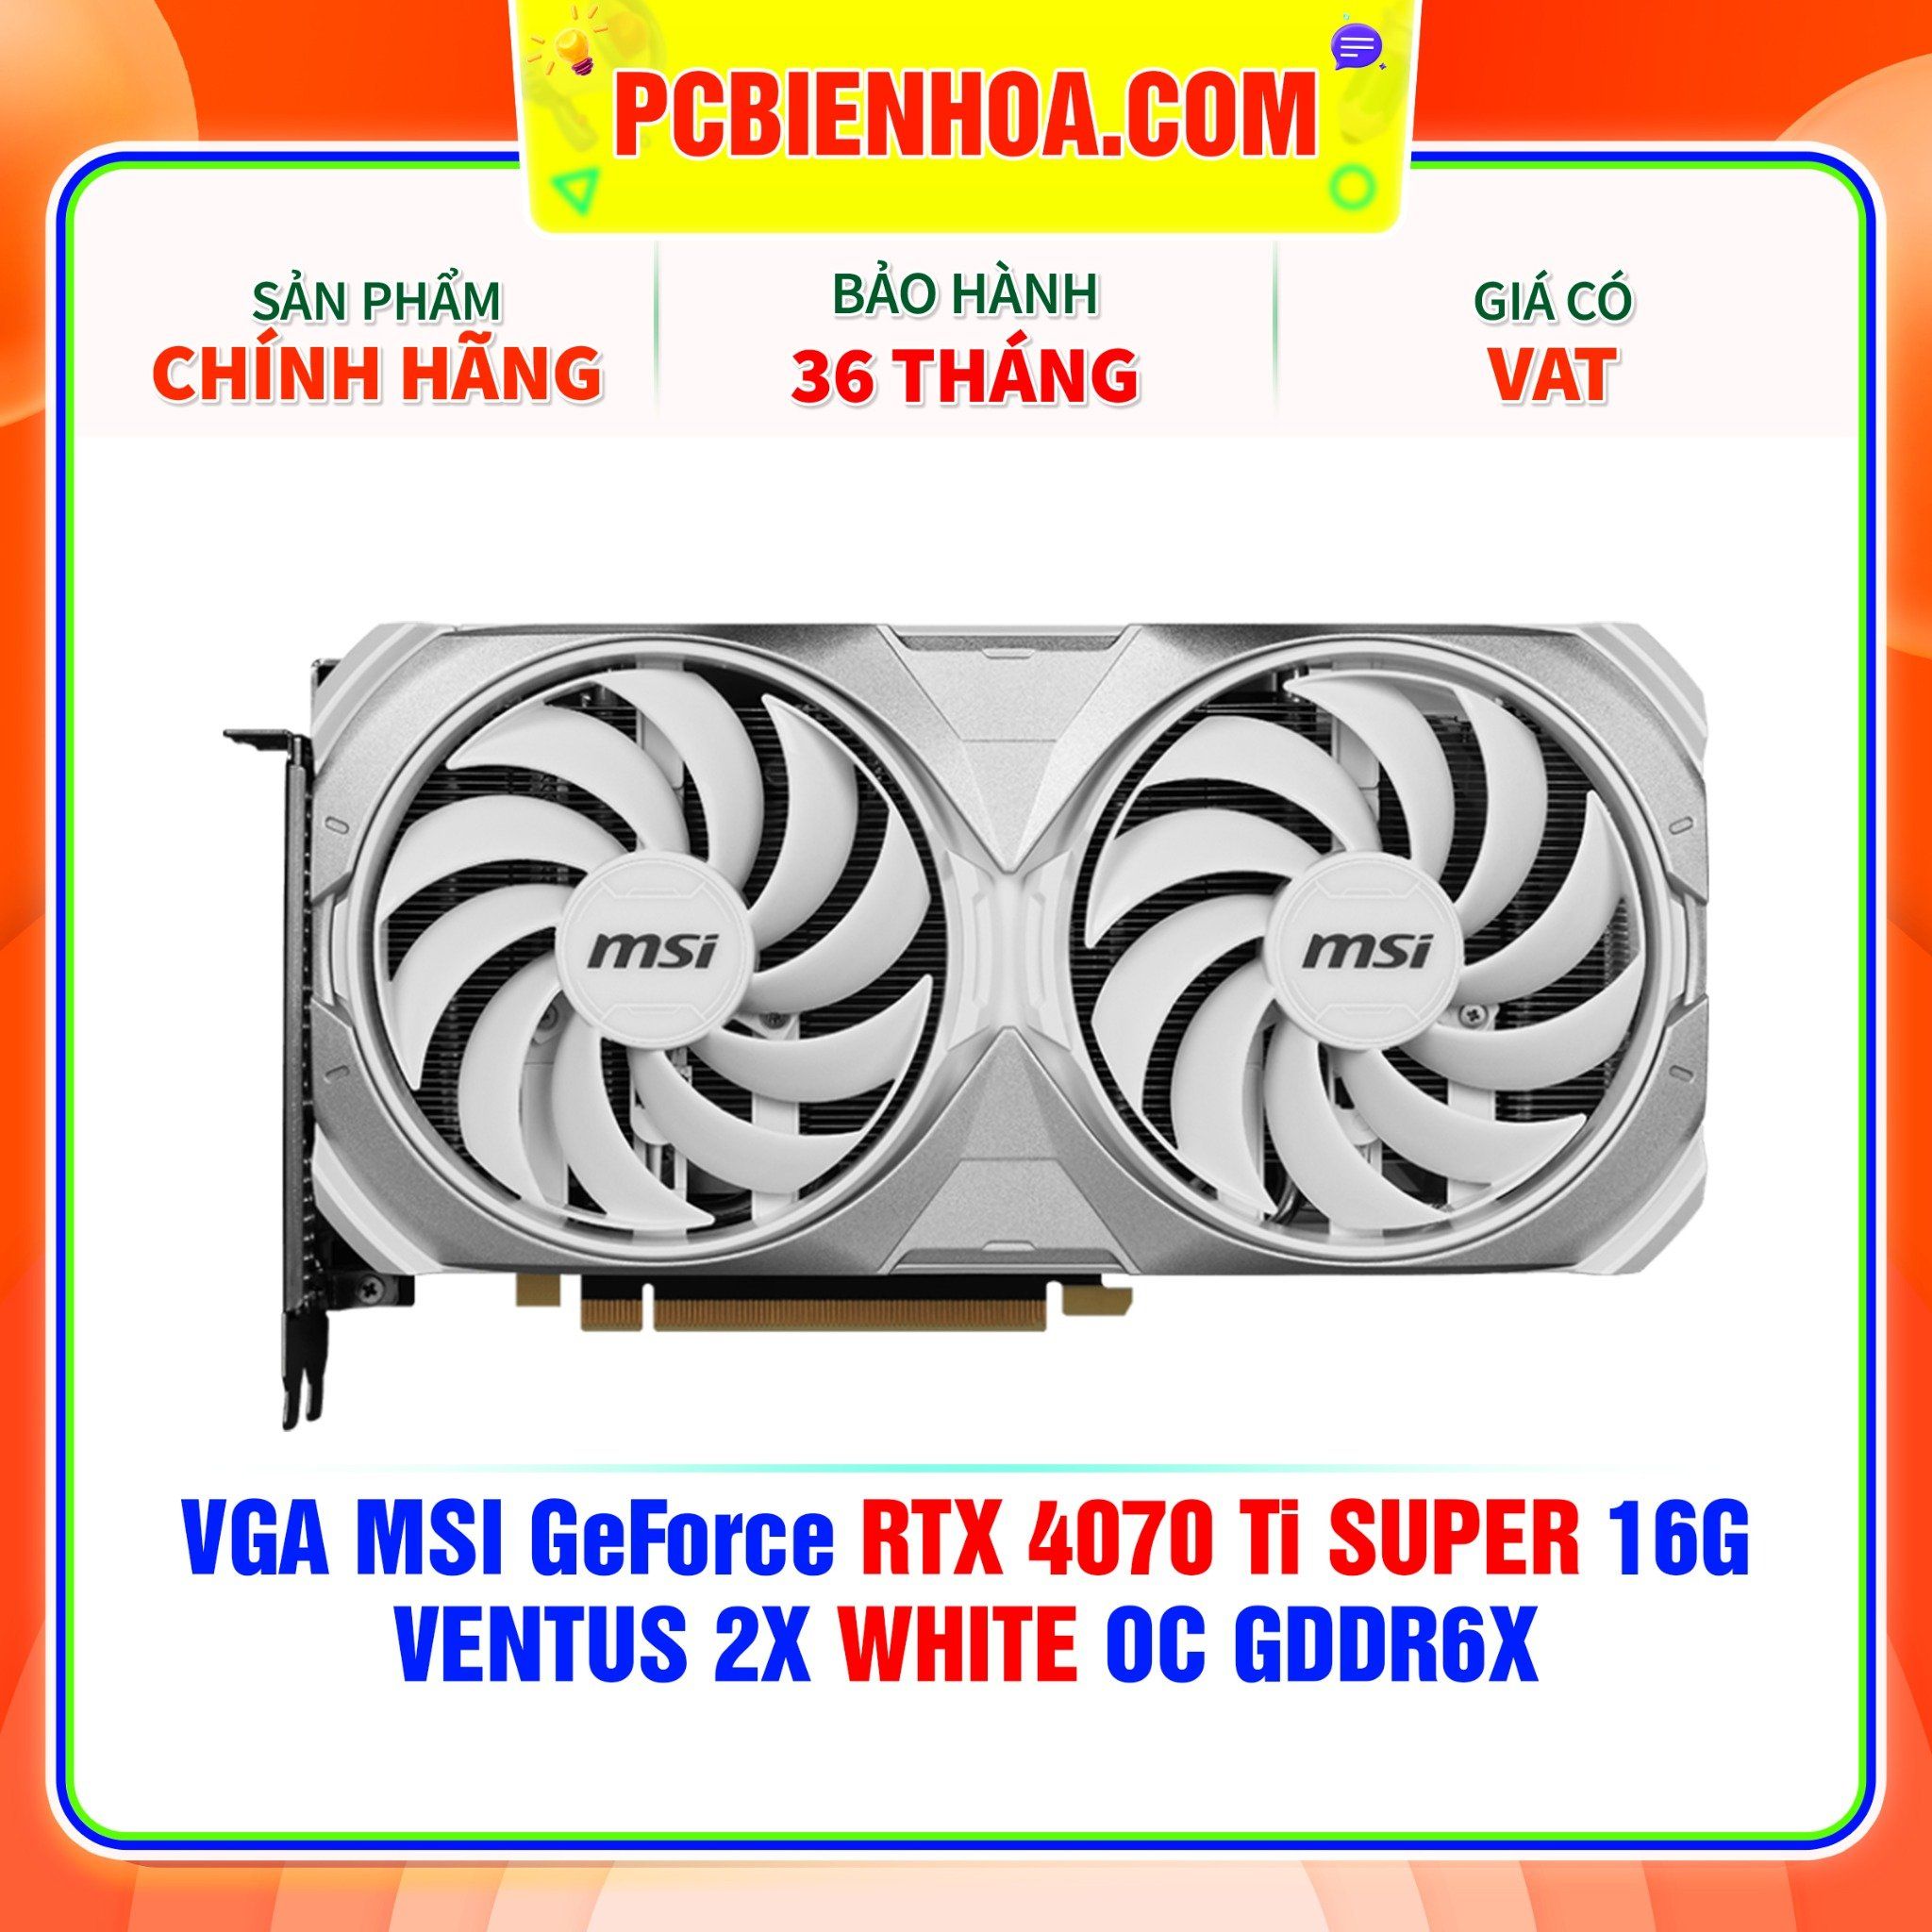  VGA MSI GeForce RTX 4070 Ti SUPER 16G VENTUS 2X WHITE OC GDDR6X 